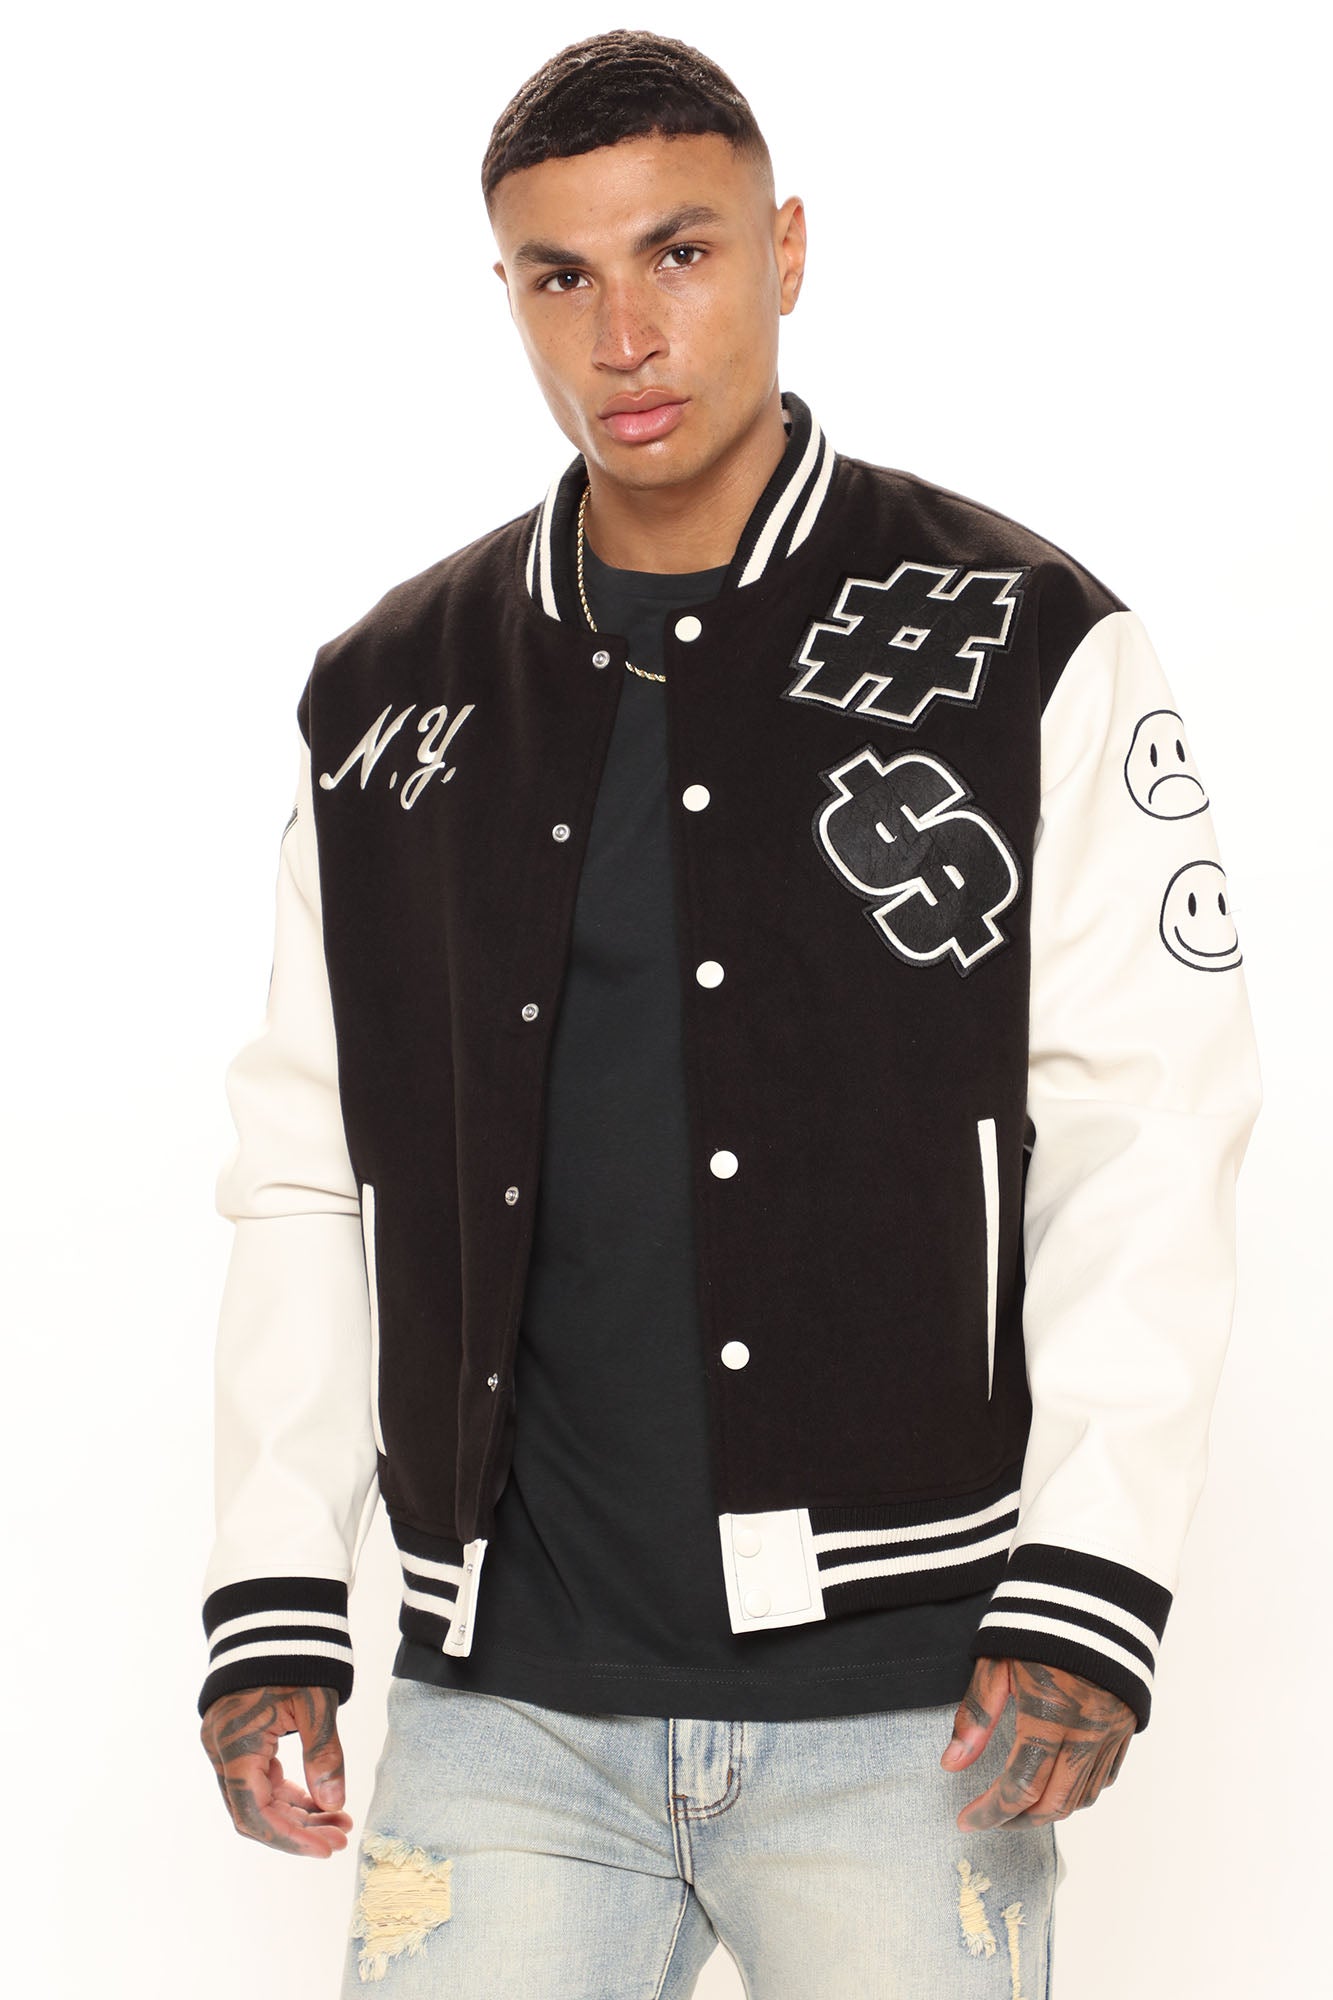 NY Varsity Jacket - Black/combo, Fashion Nova, Mens Jackets